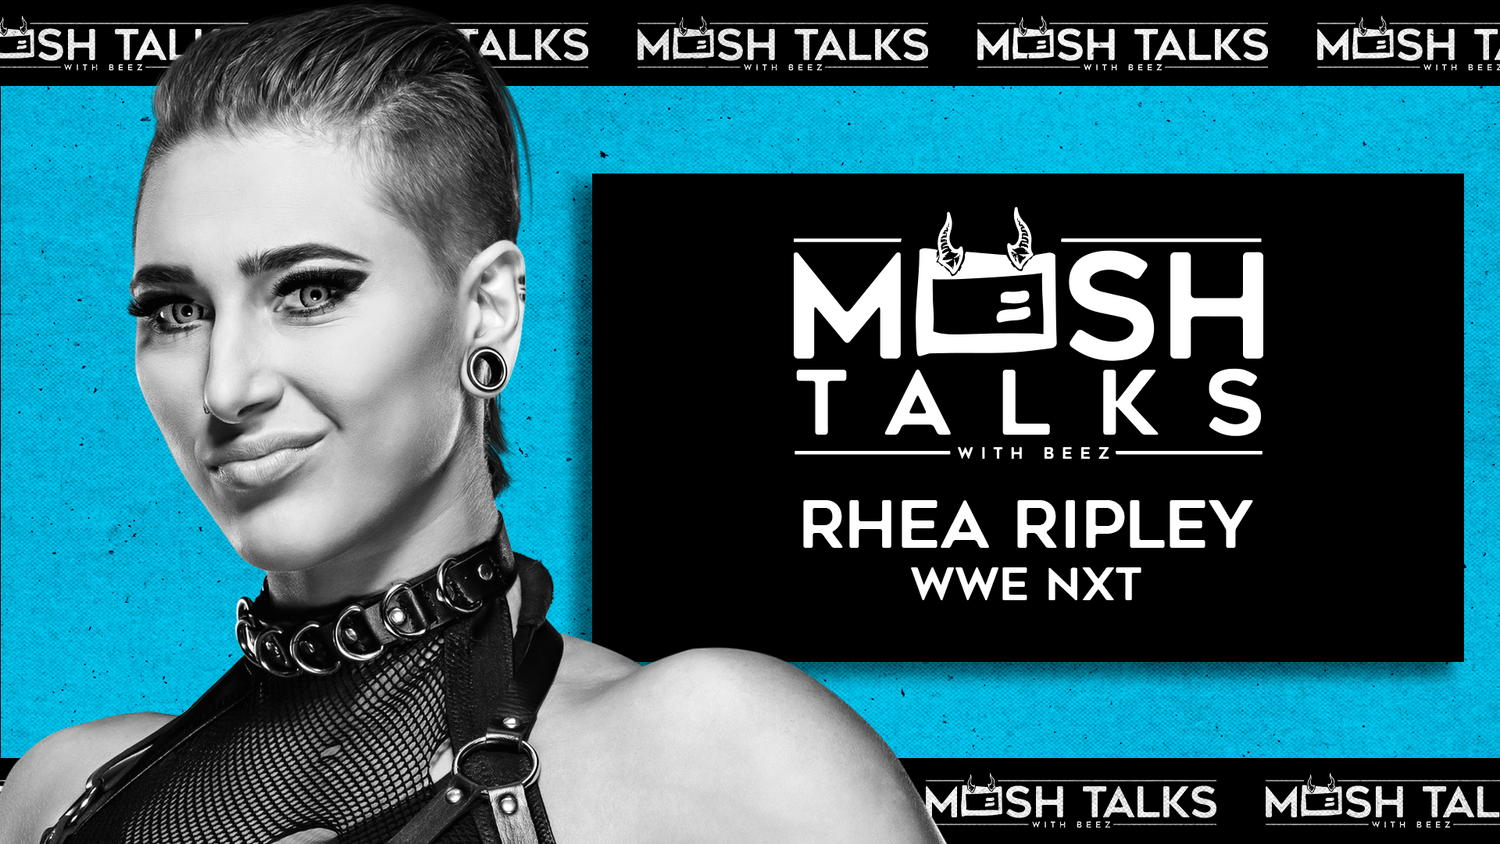 Mosh Talks: Talking Metal With Rhea Ripley